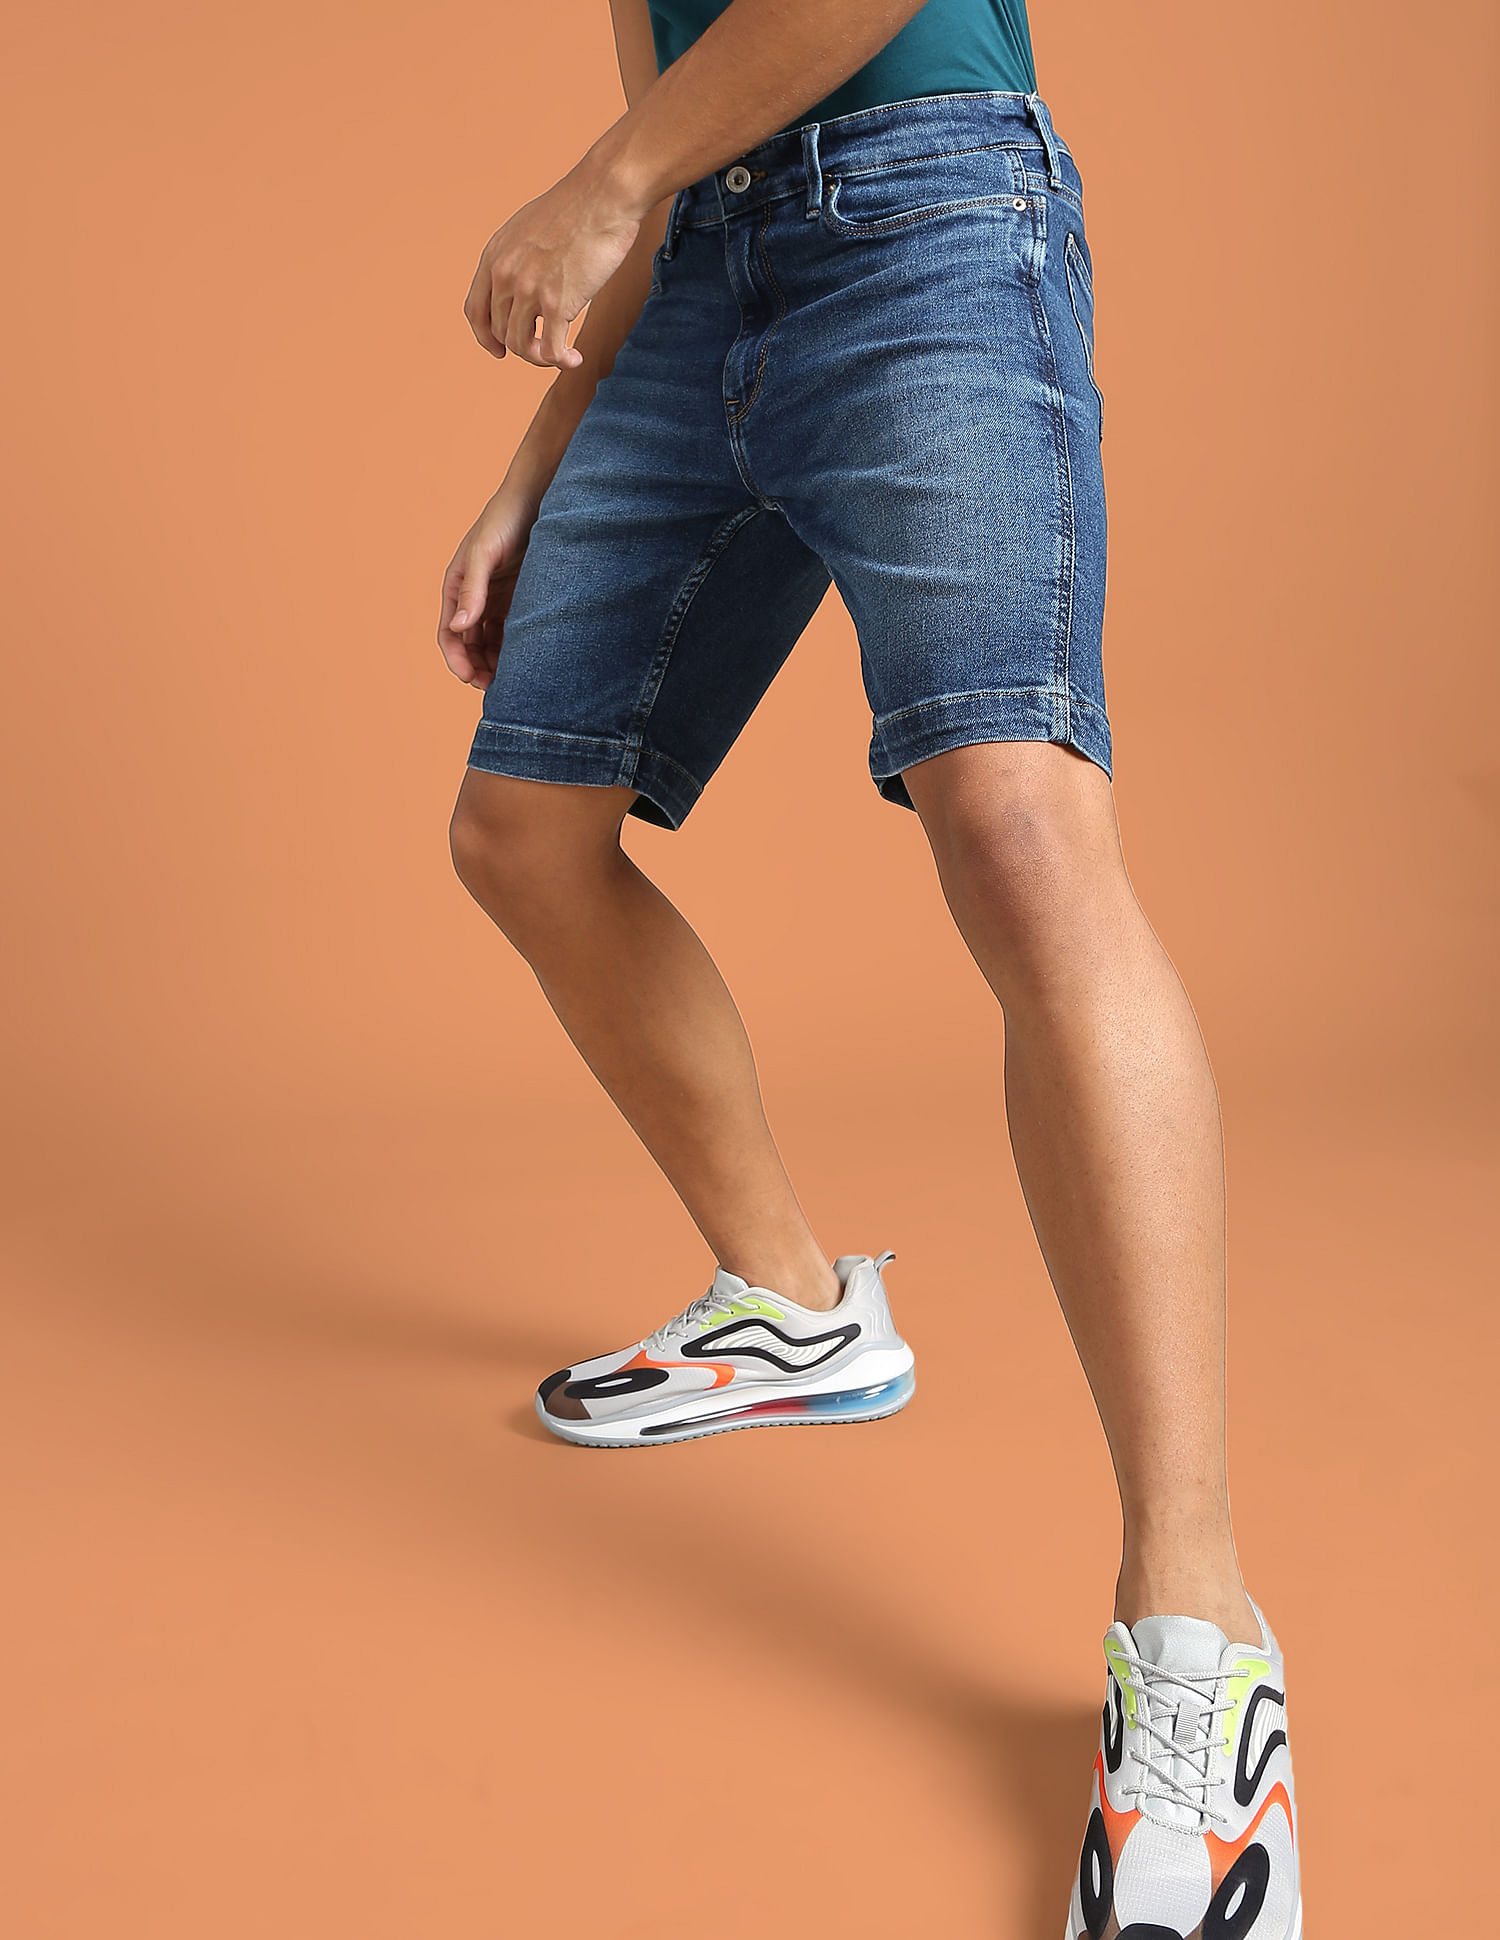 Zena women's jeans slim shorts orange – CROSS JEANS